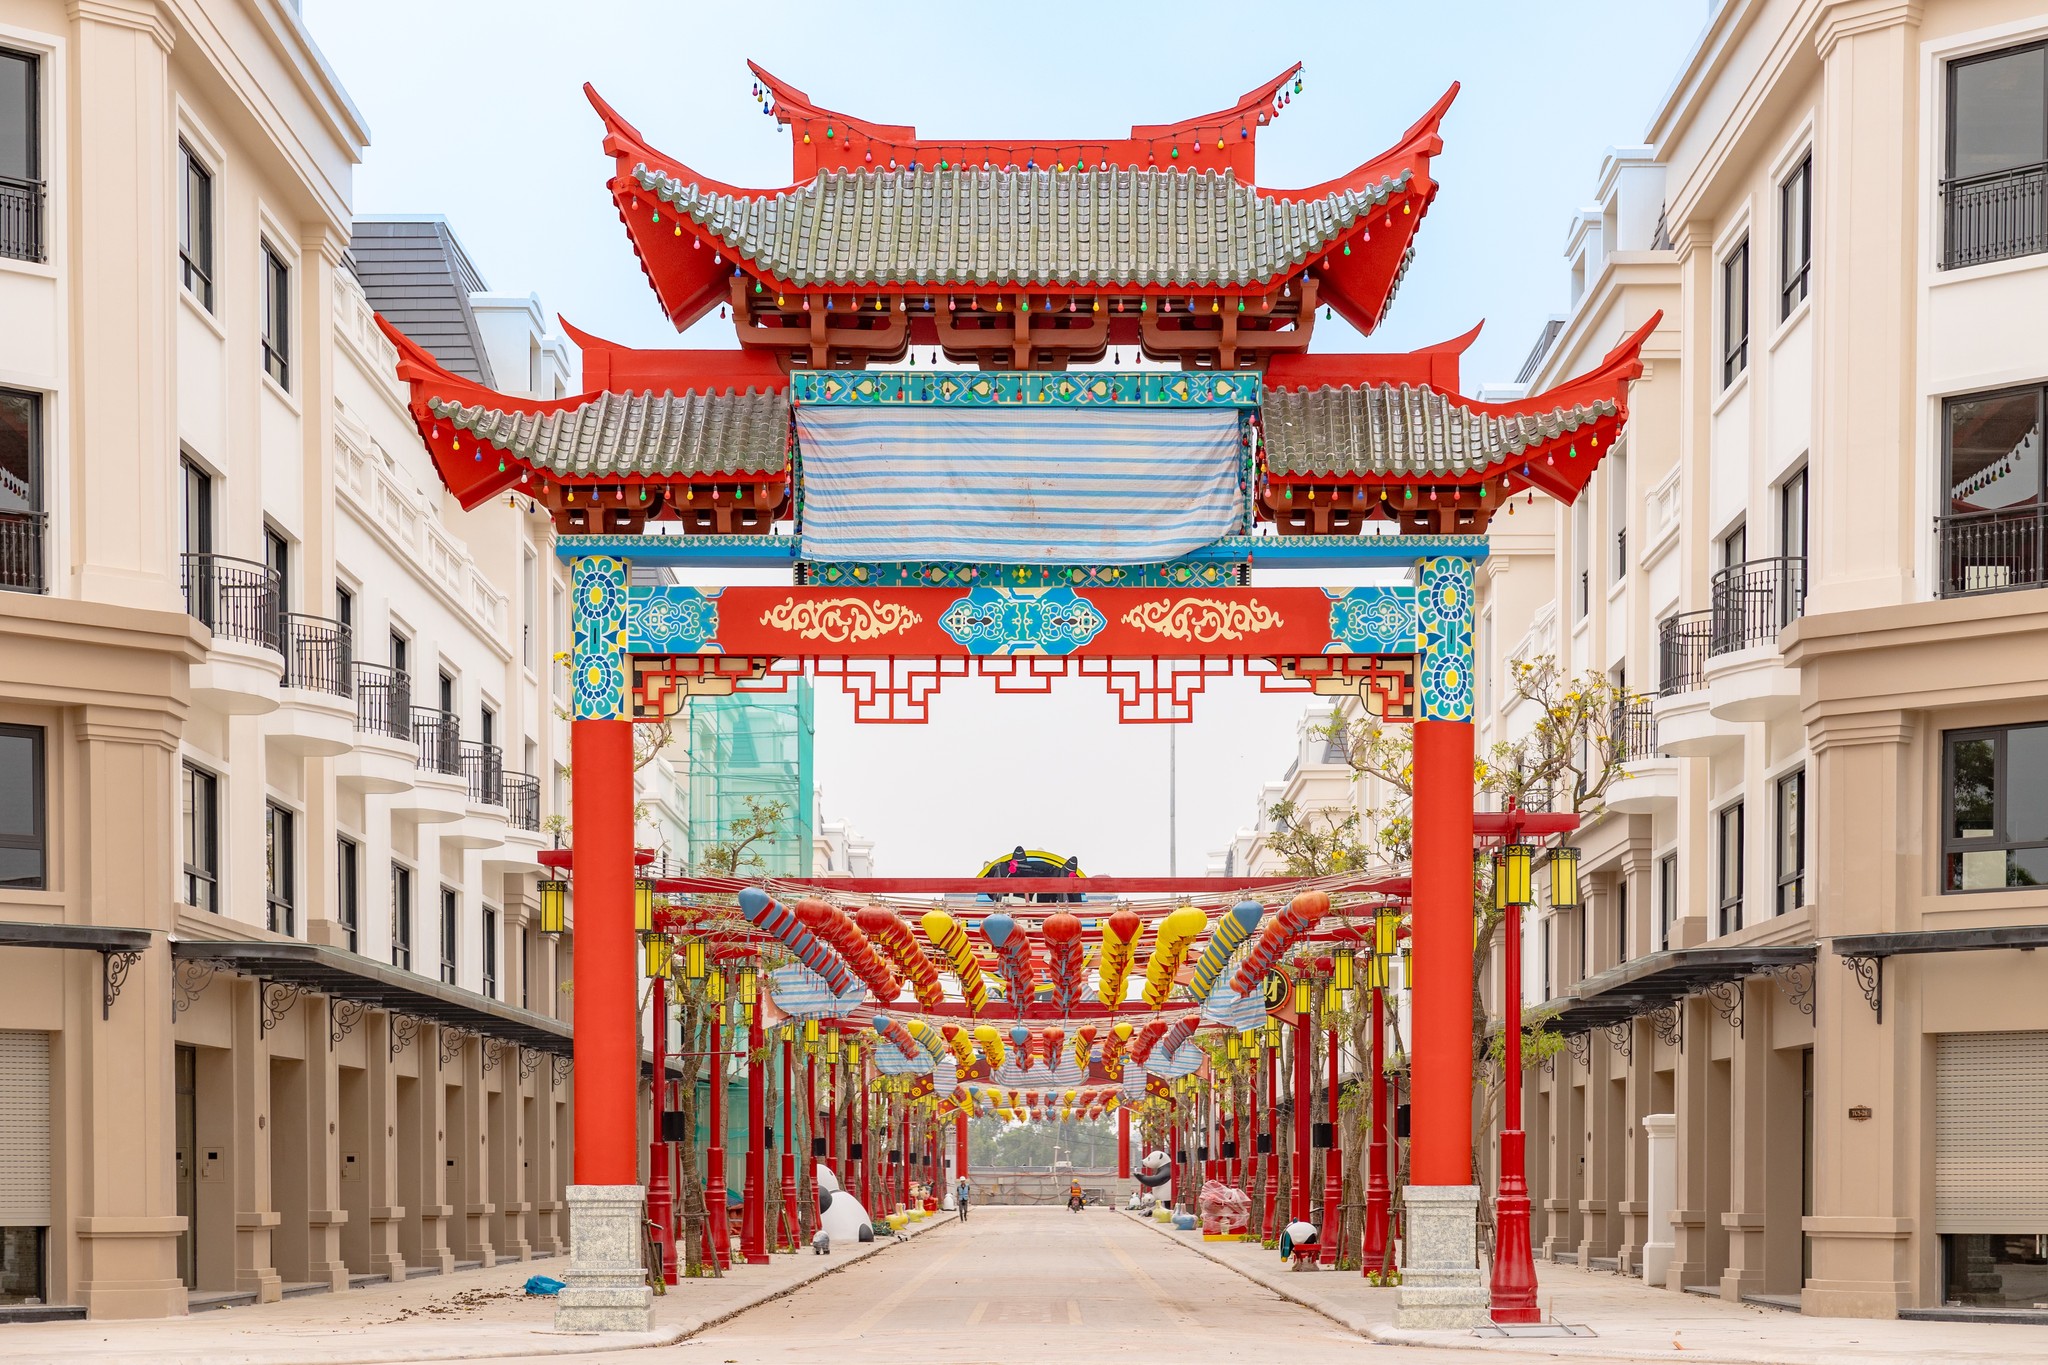 Sự kiện hội chợ diễn ra tại Little Shanghai sẽ là điểm nhấn của chương trình chào hè tại Vinhomes Golden Avenue